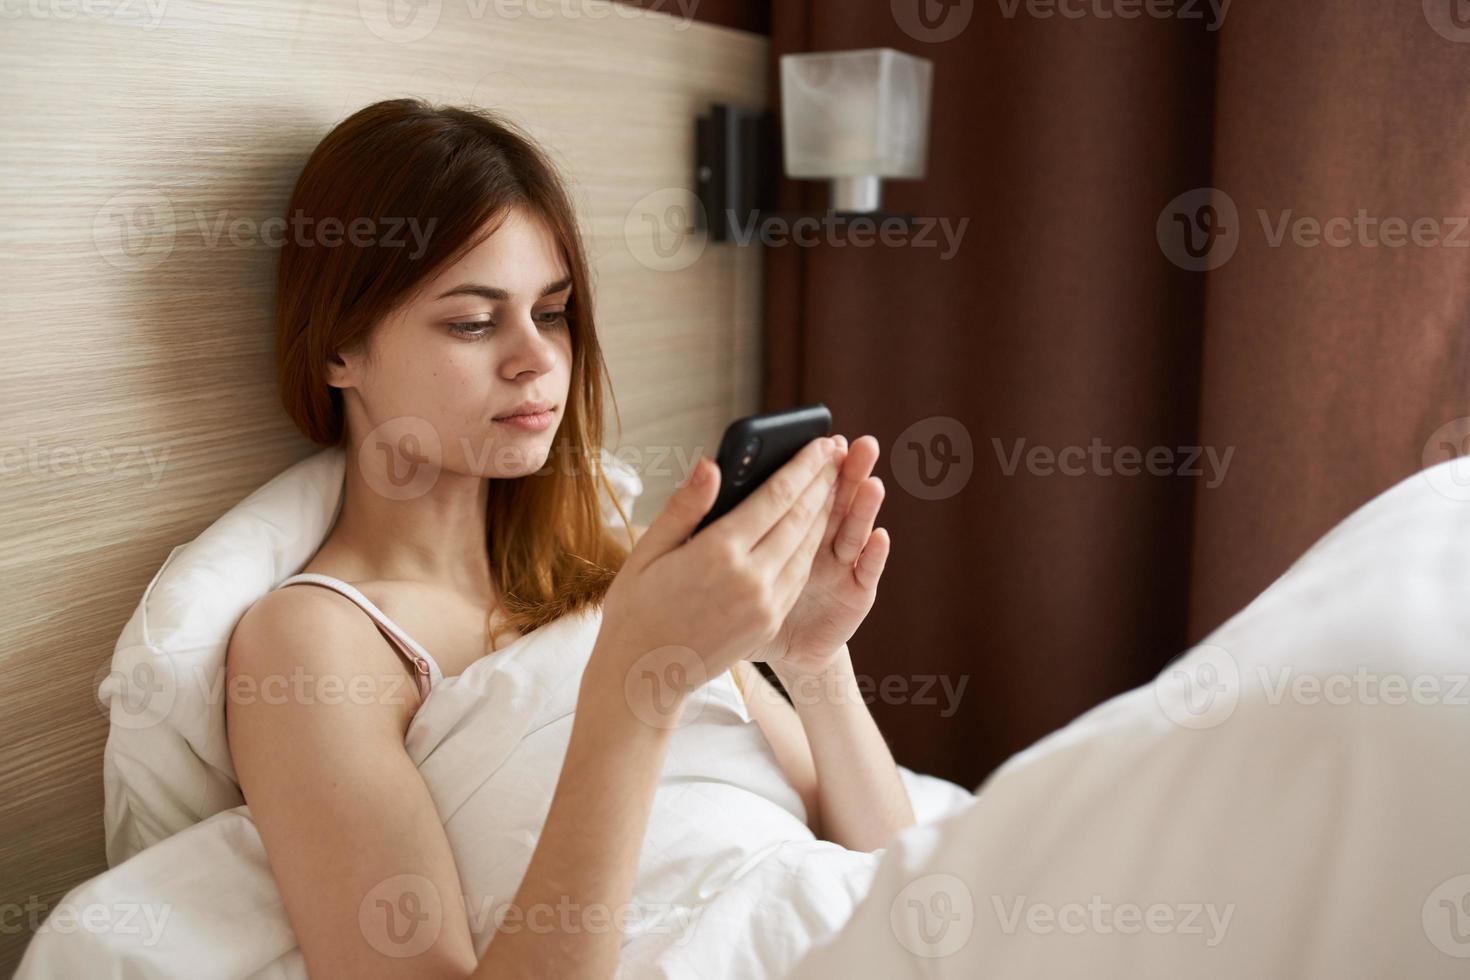 kvinna med mobil telefon lögner i säng nära fönster och gardiner design foto